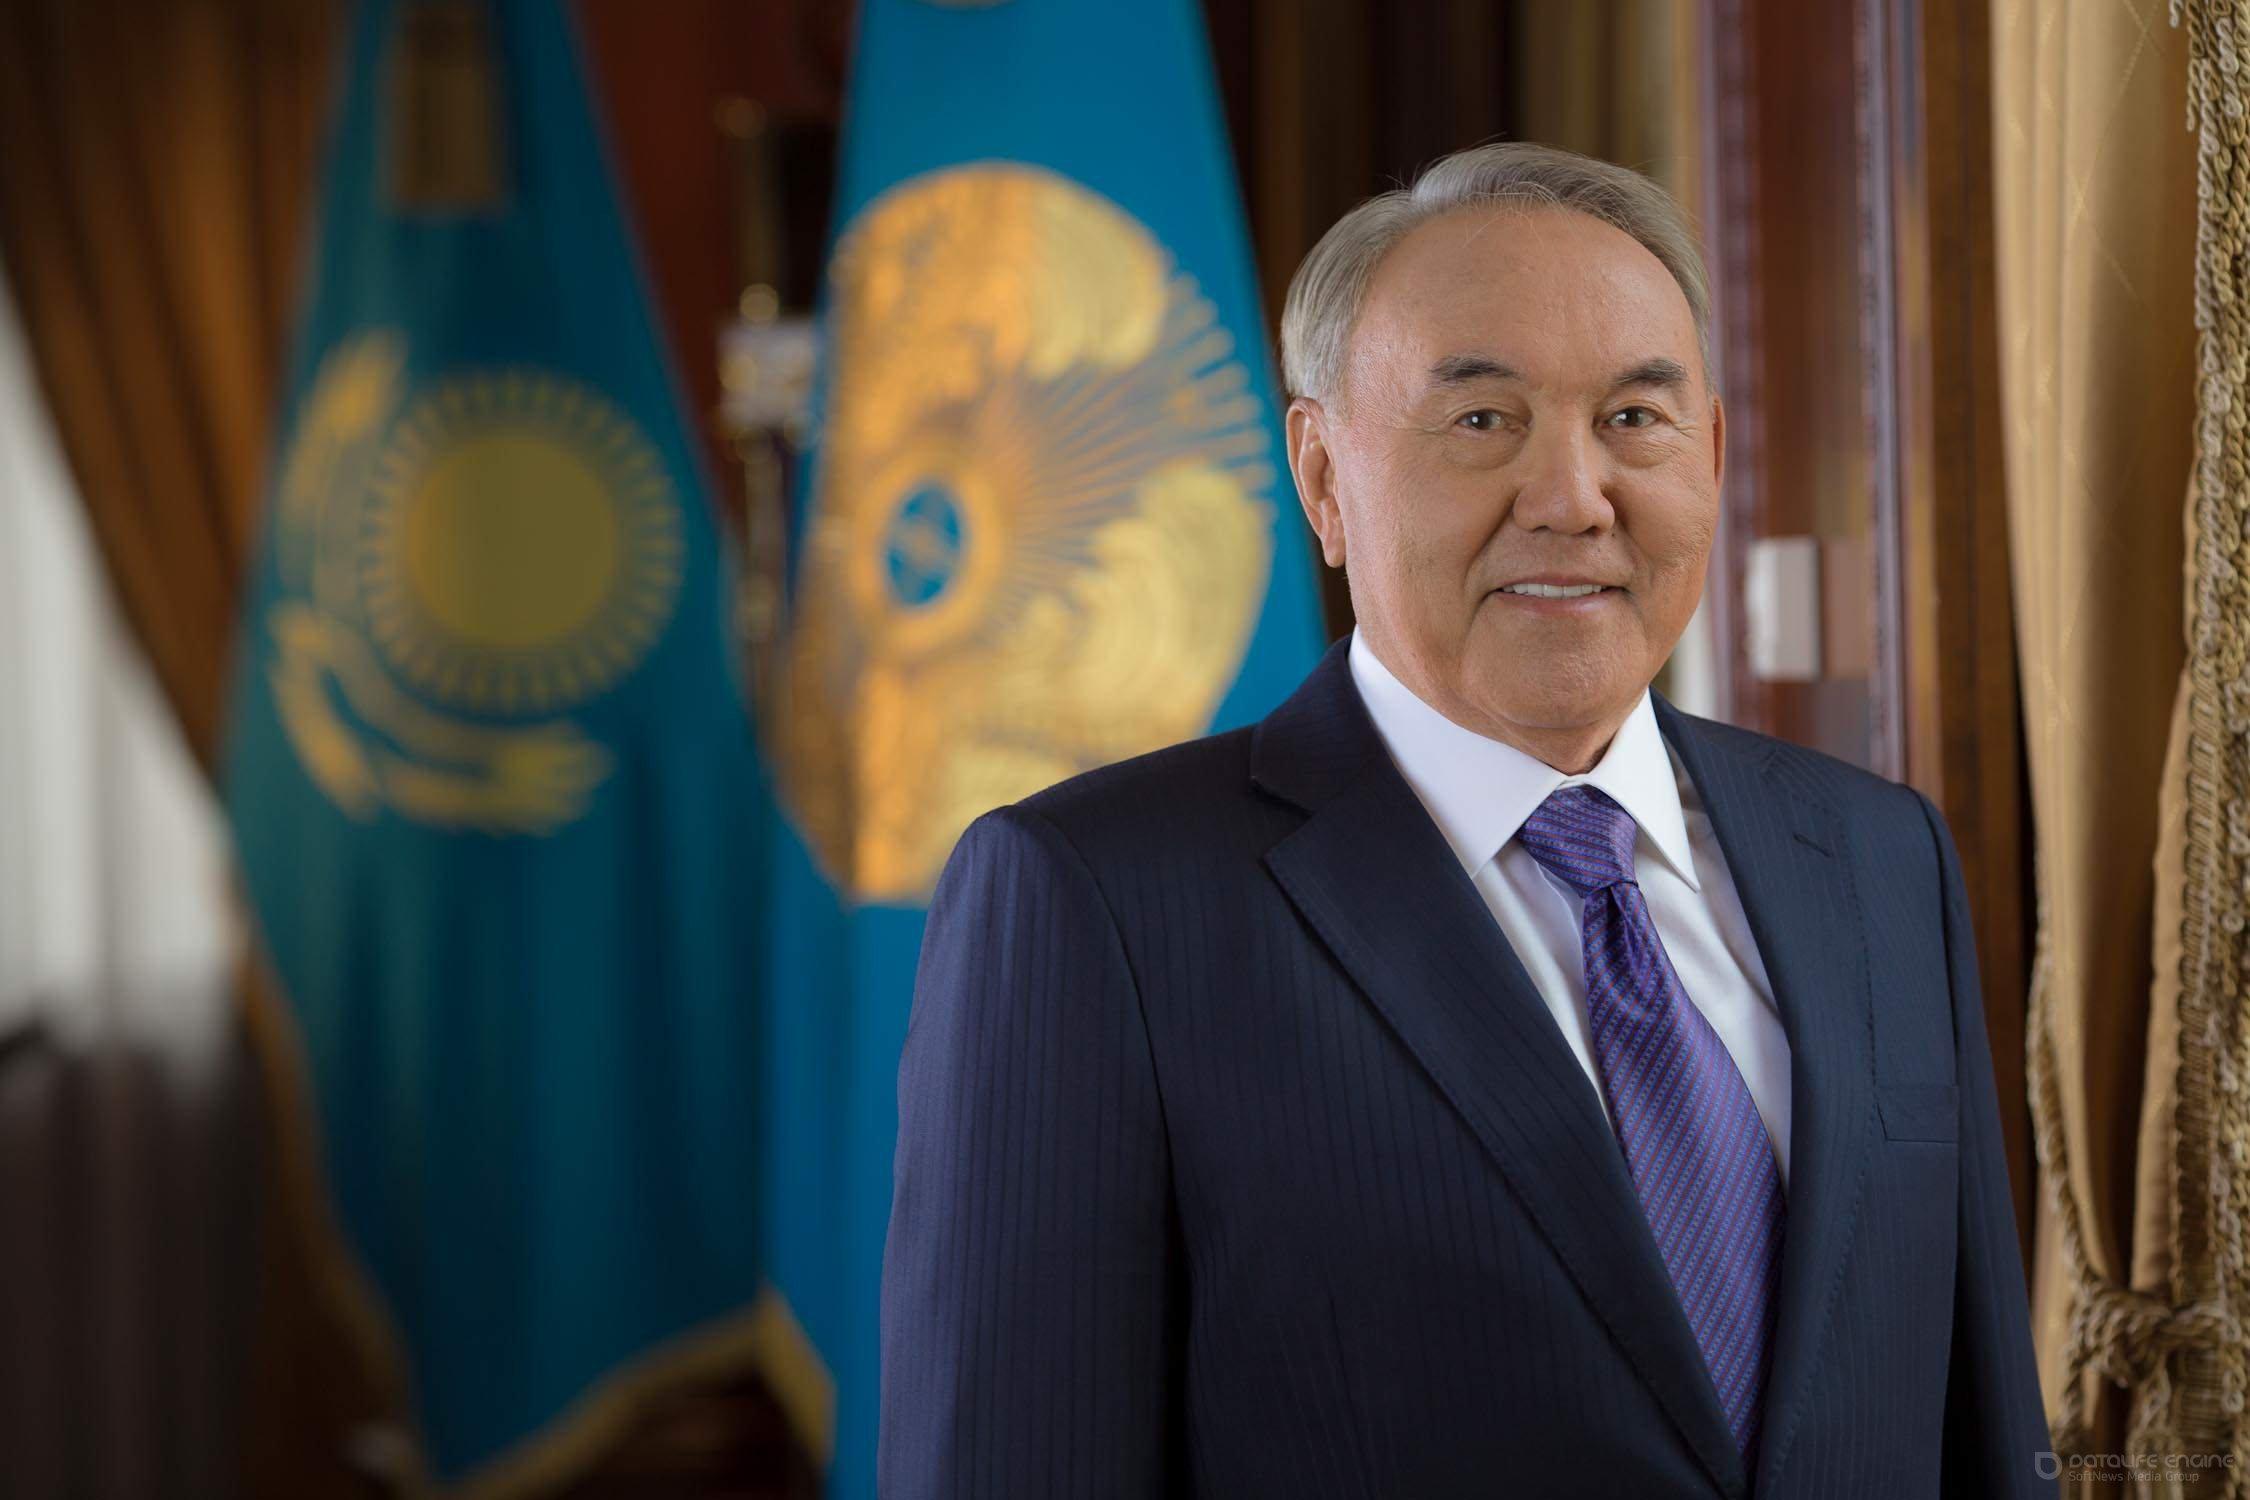 Нұрсұлтан Назарбаев: Ұлы даланың жеті қыры